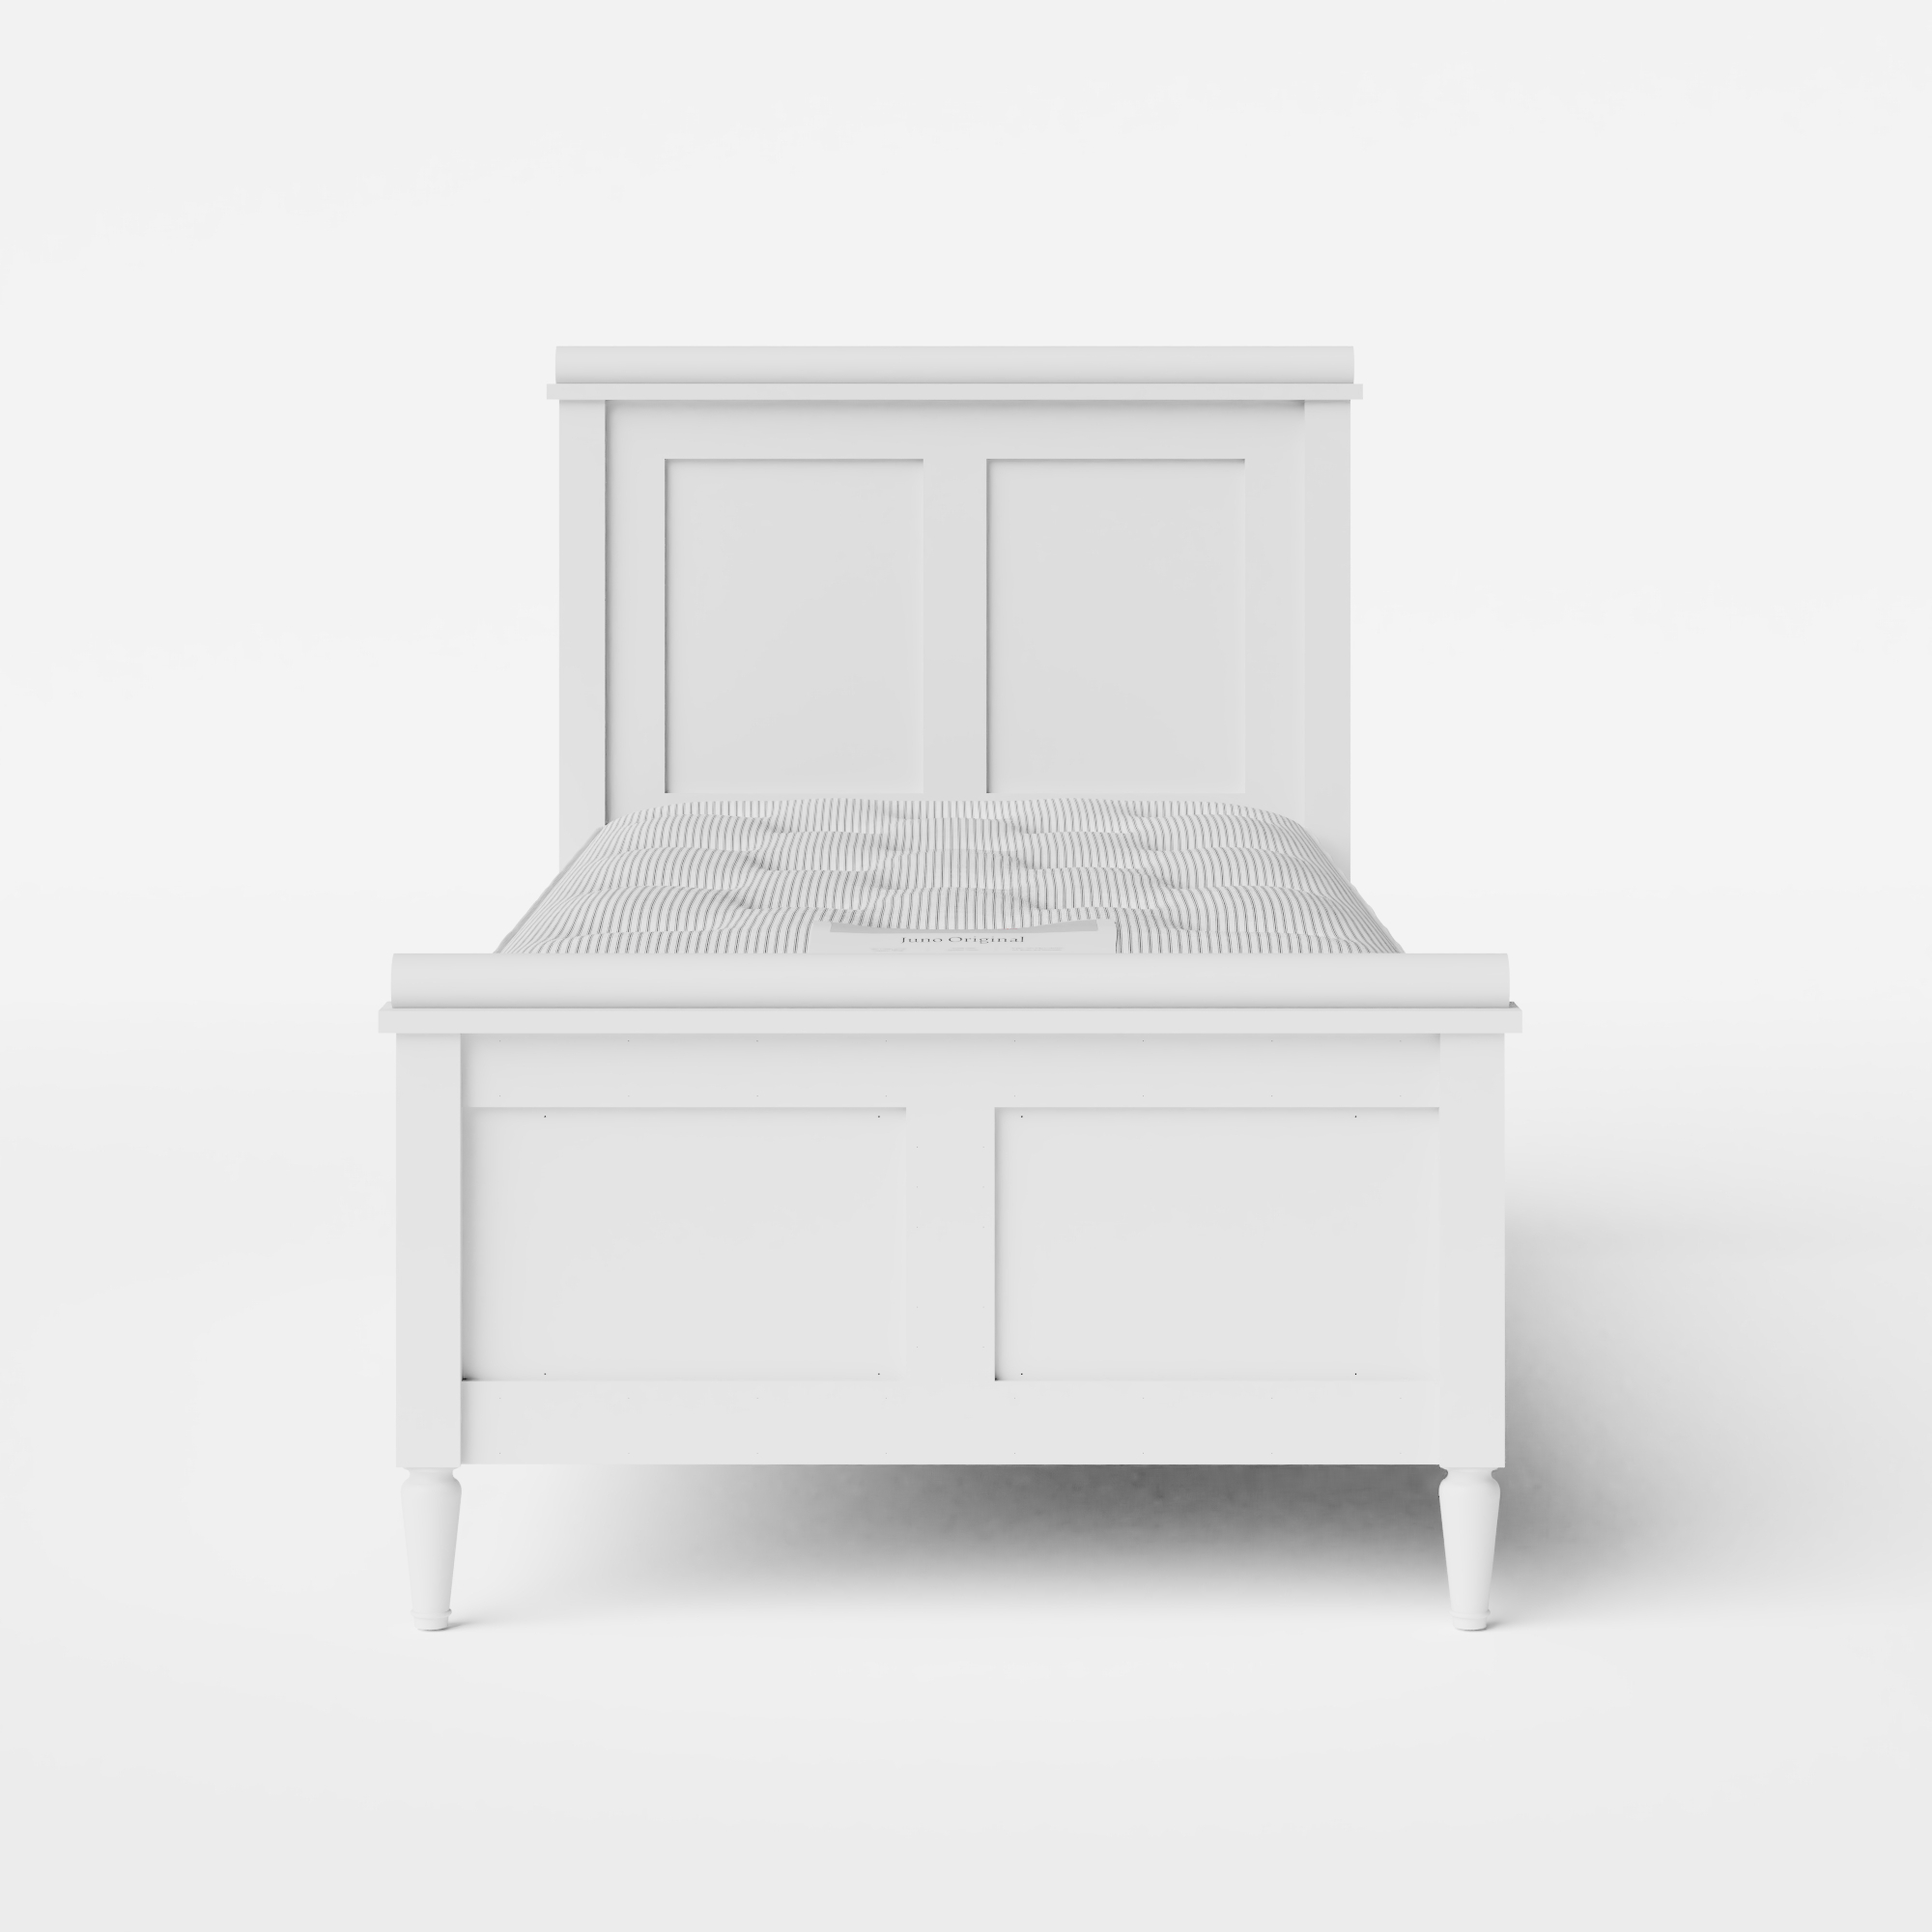 Nocturne Painted cama individual de madera pintada en blanco con colchón